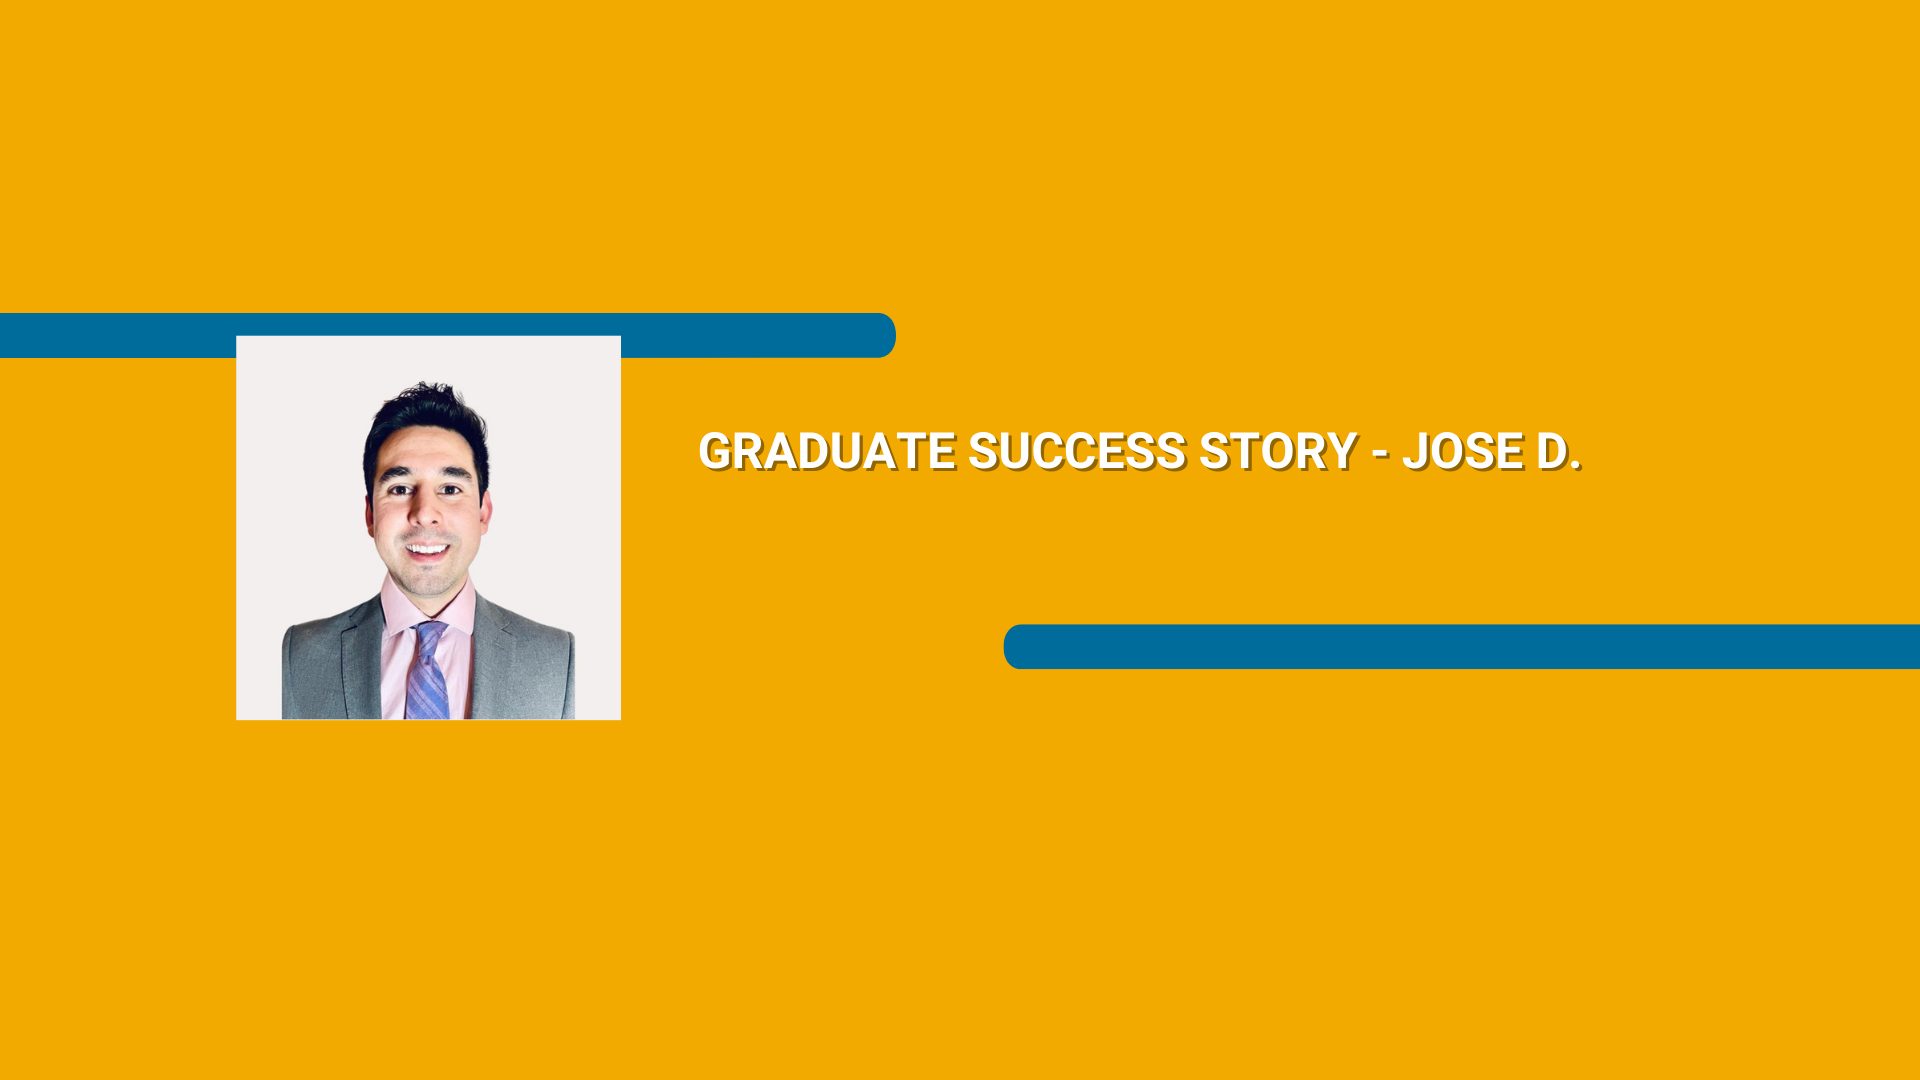 Rectangle orange avec une photo d'un homme portant un costume et le texte Graduate Success Story - Jose D. en caractères blancs